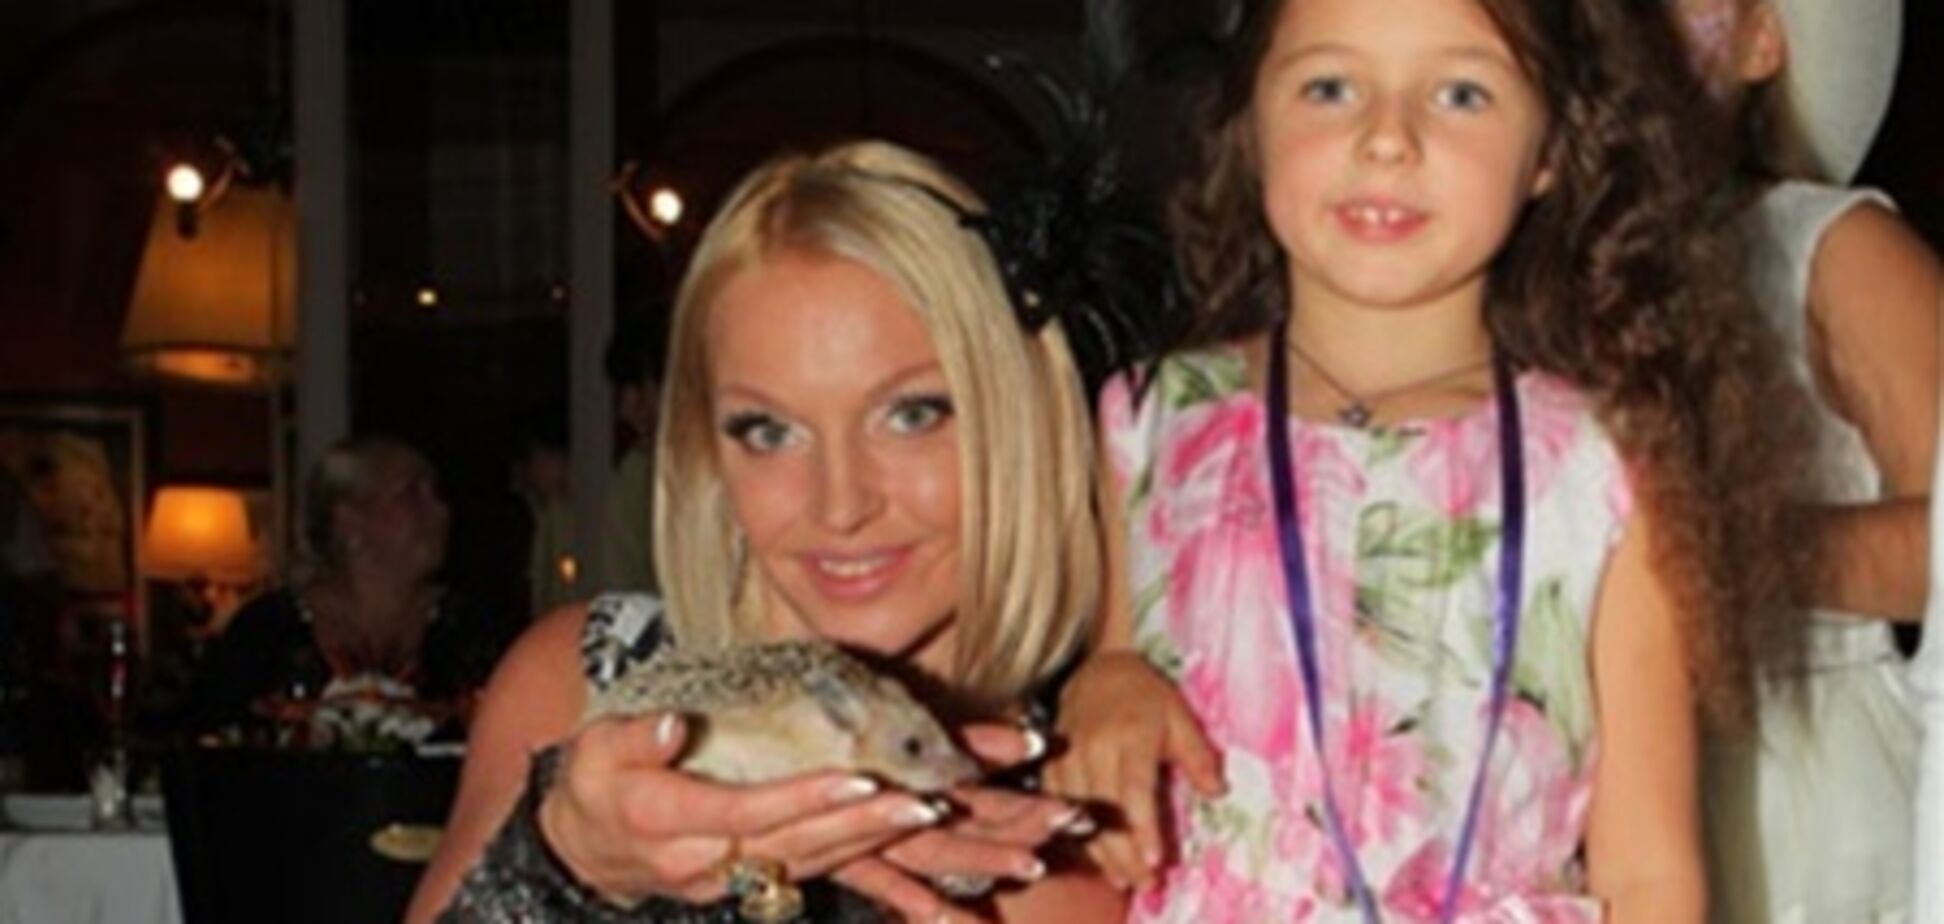 Дочь Волочковой освободила няню после ограбления дома